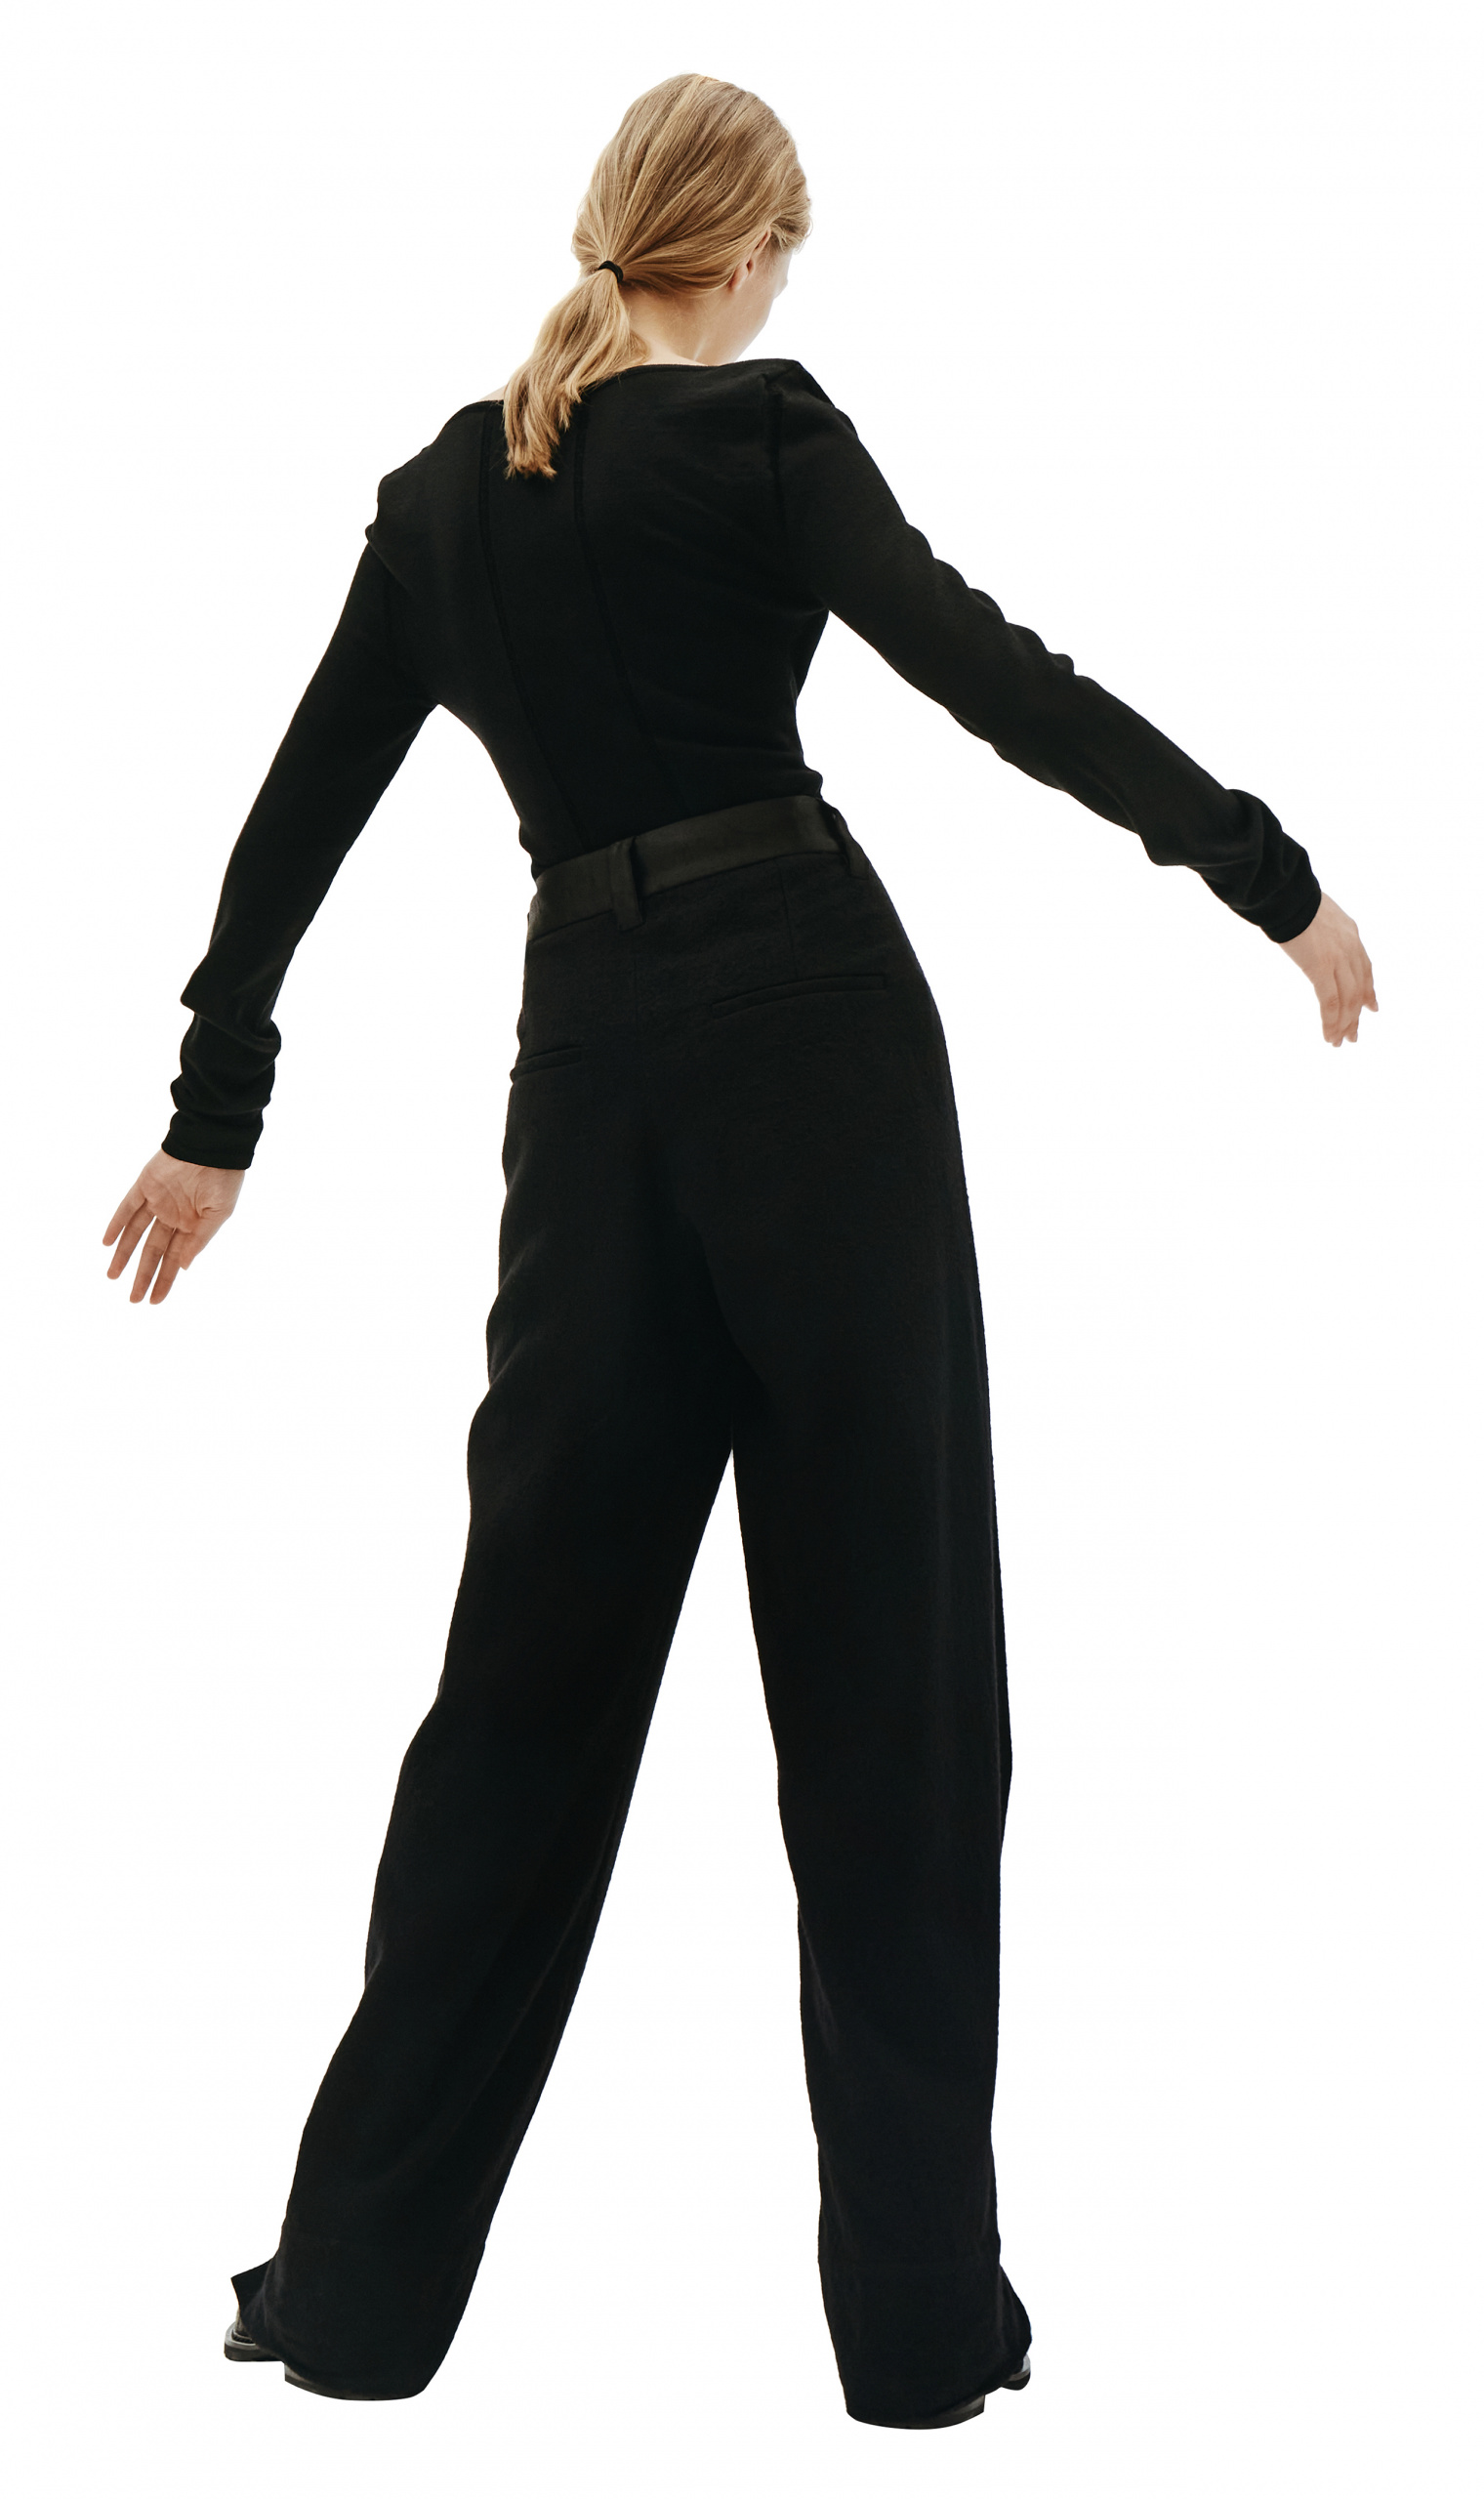 Ann Demeulemeester Black Fleece Bodysuit